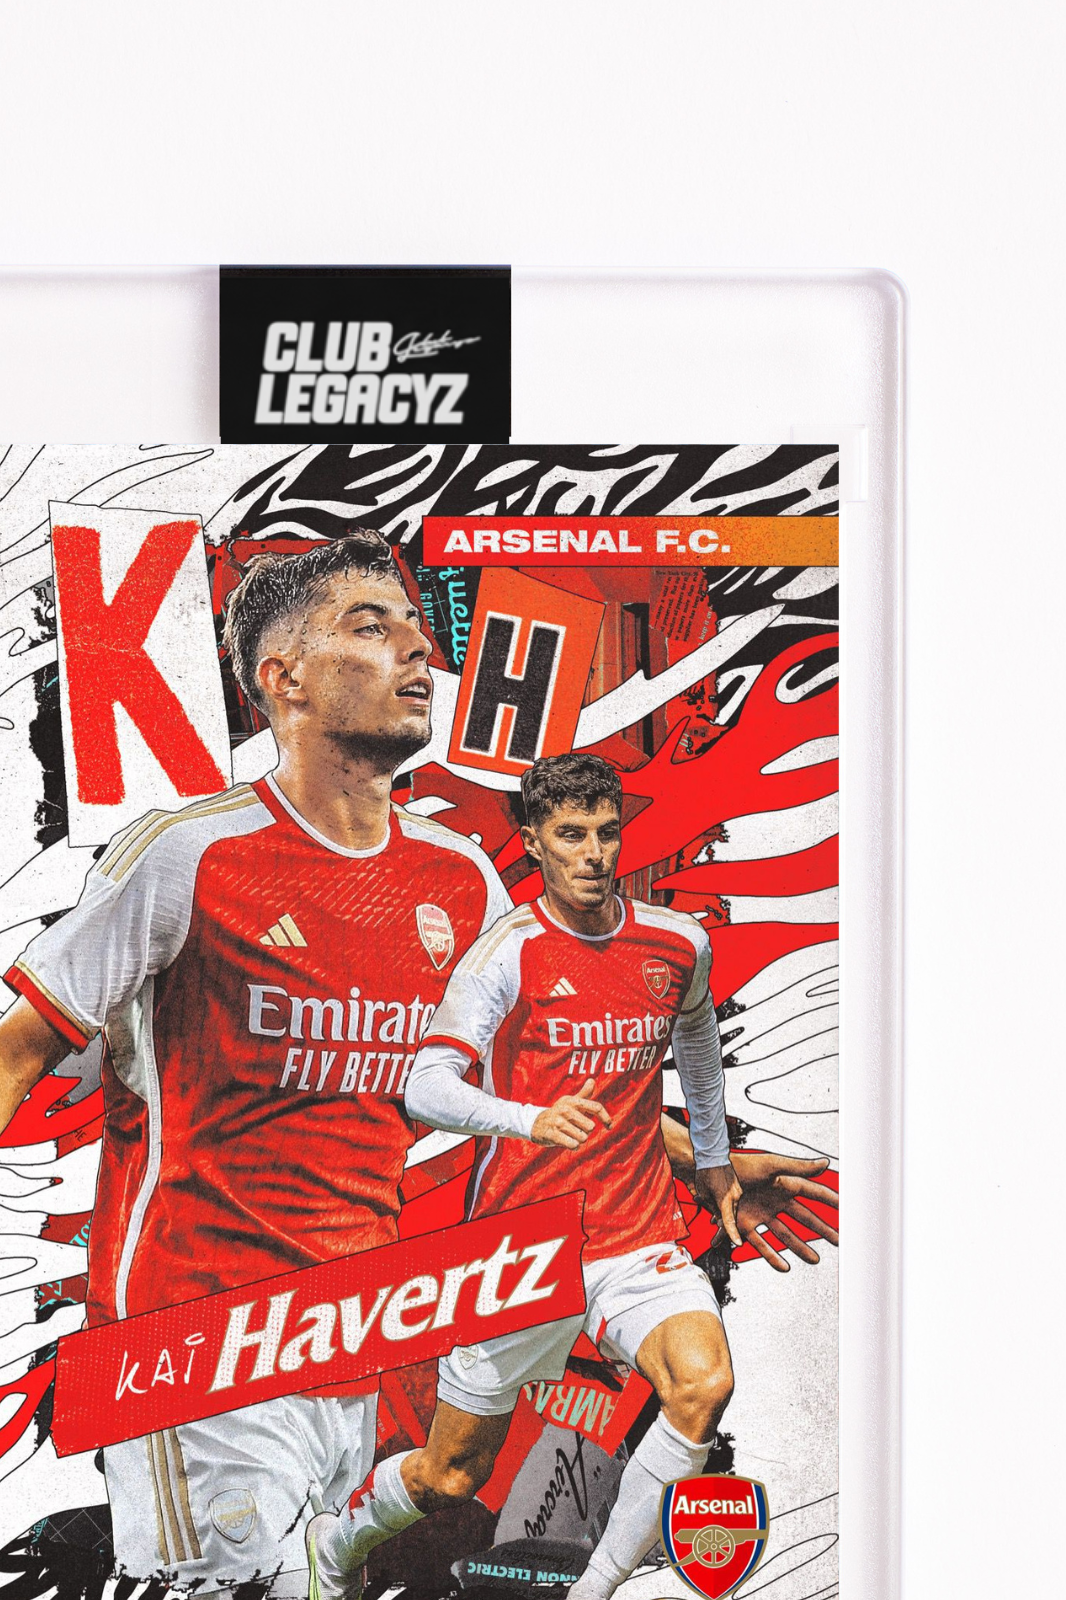 Arsenal FC - Kai Havertz Icon limited to 50